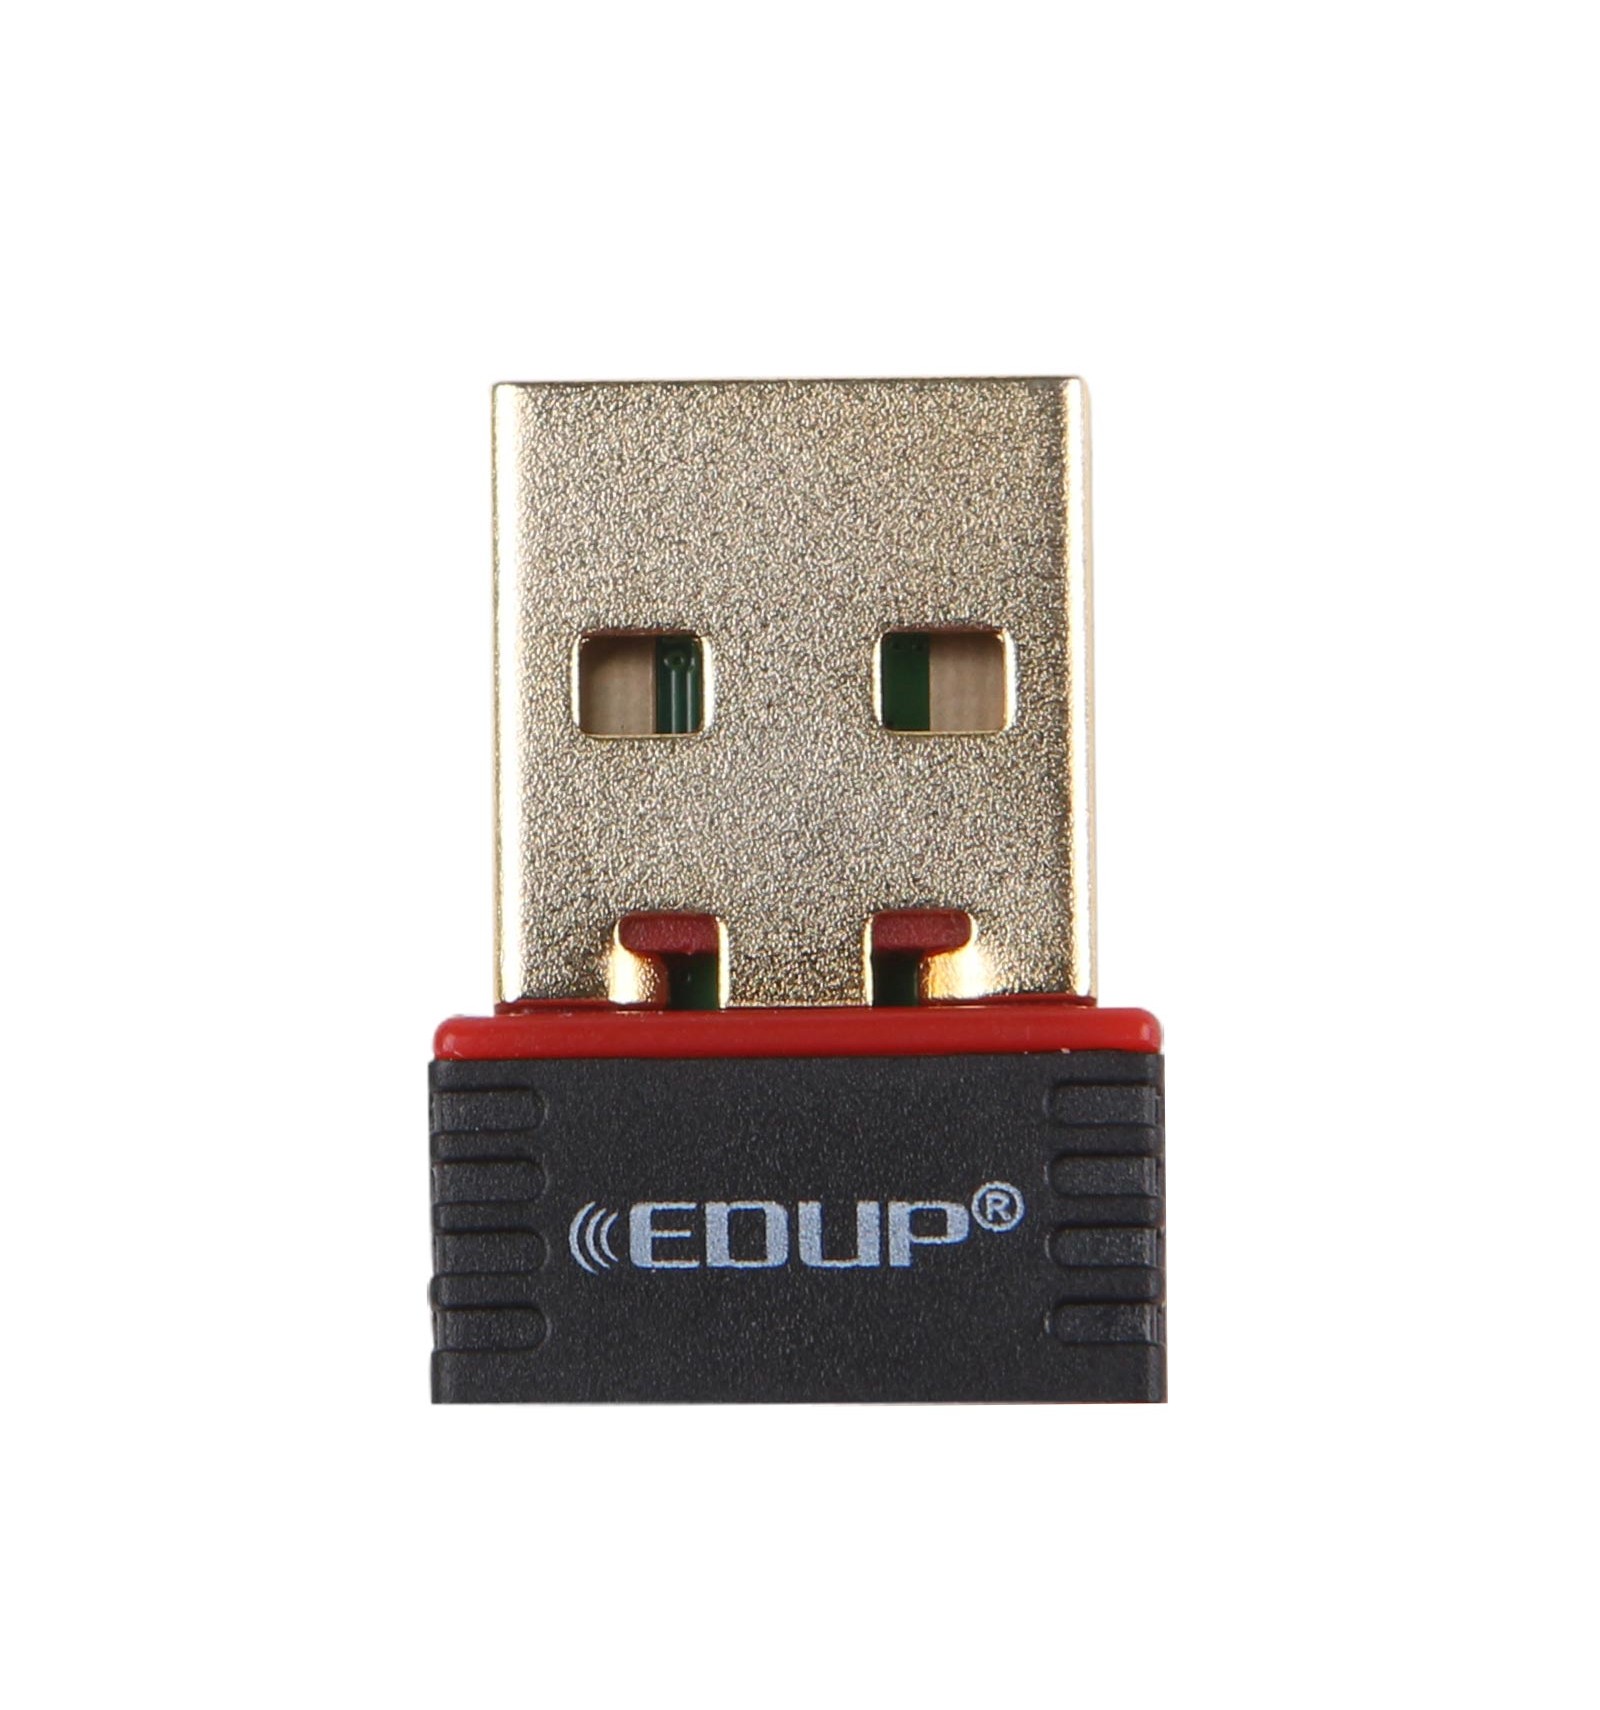 Clé USB Wifi - ELECTRONIQUE - Nozzler